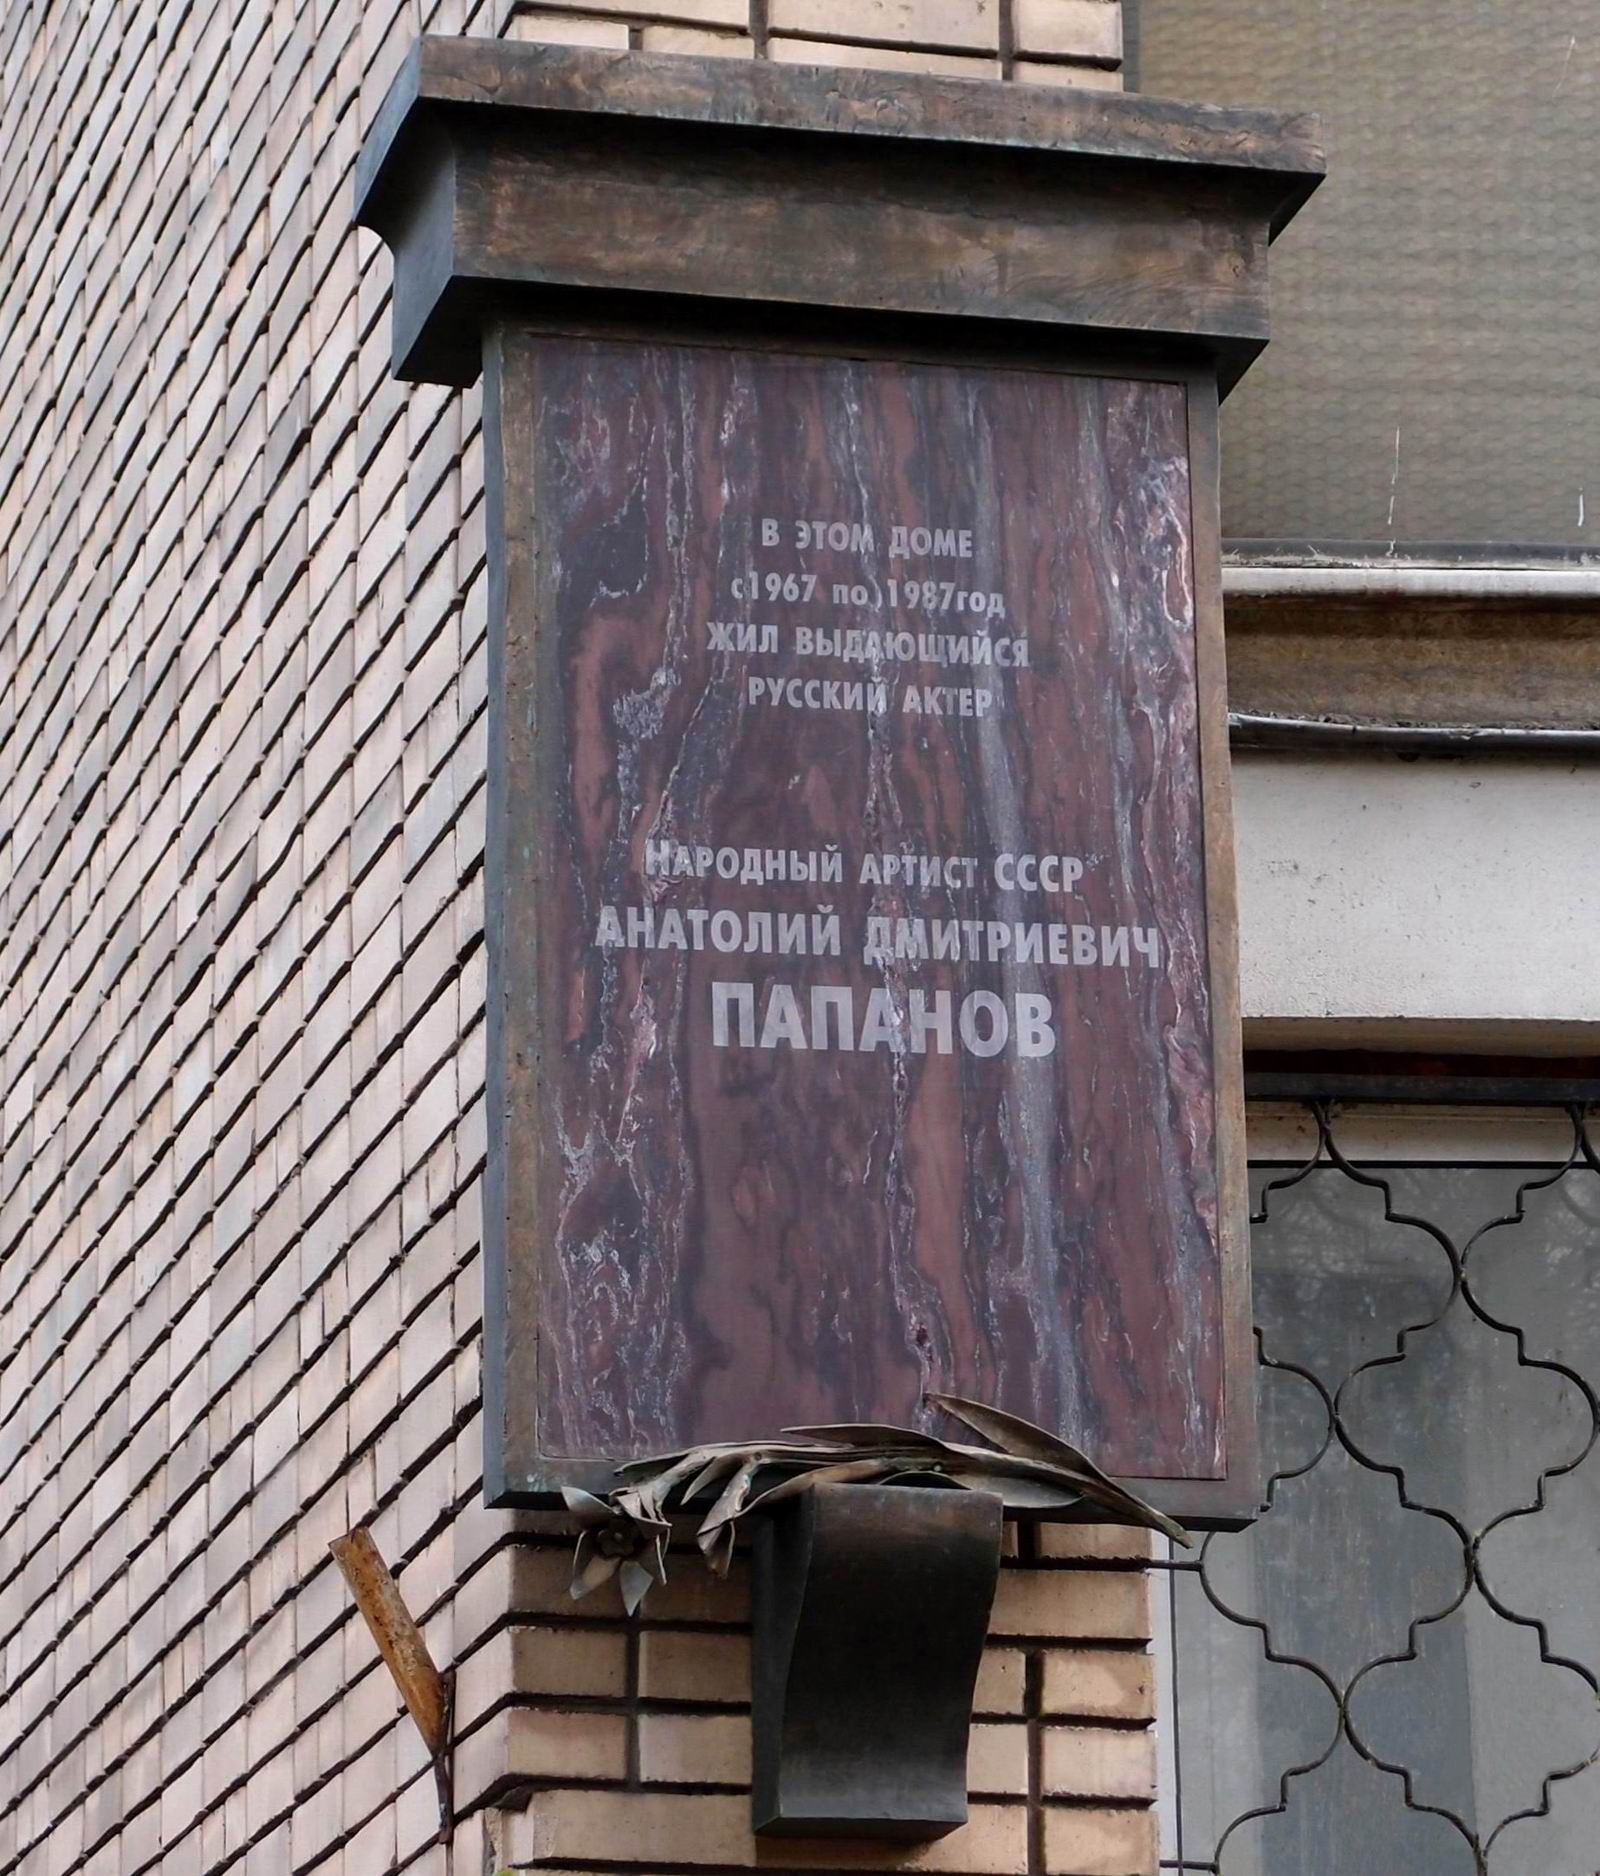 Мемориальная доска Папанову А.Д. (1922-1987), арх. С.П.Хаджибаронов, на улице Спиридоновка, дом 8, открыта в 1991, доработана в 2010. Нажмите левую кнопку мыши, чтобы увидеть предыдущий вариант.